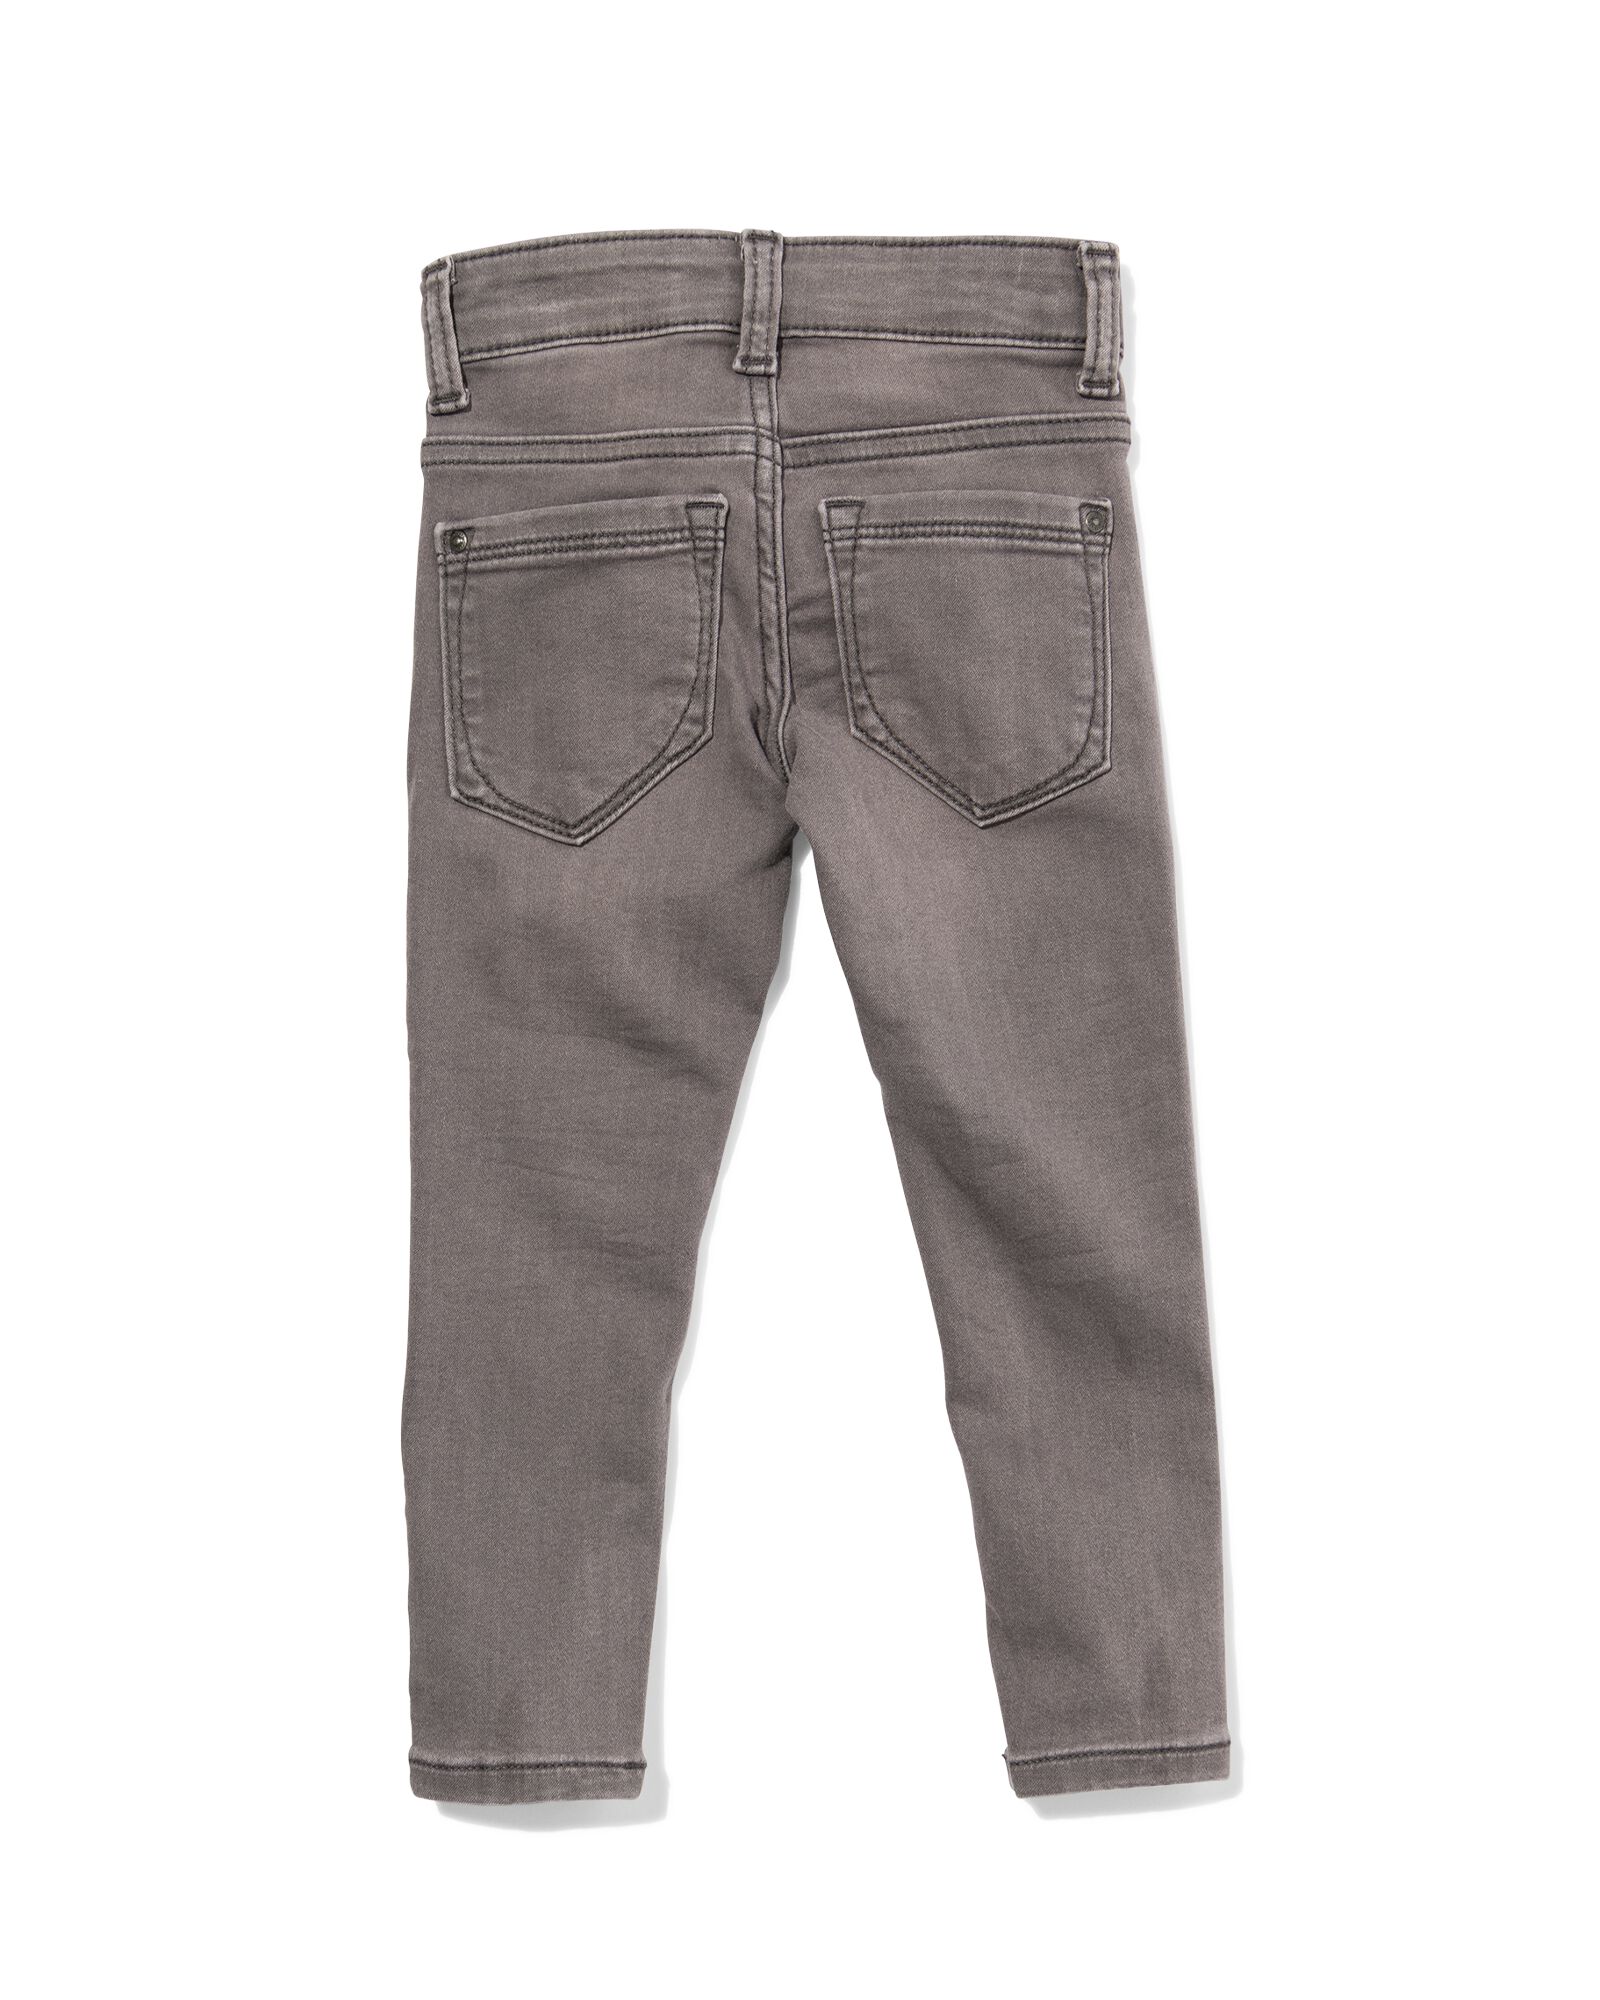 kinder jeans skinny fit grijs 98 - 30874872 - HEMA